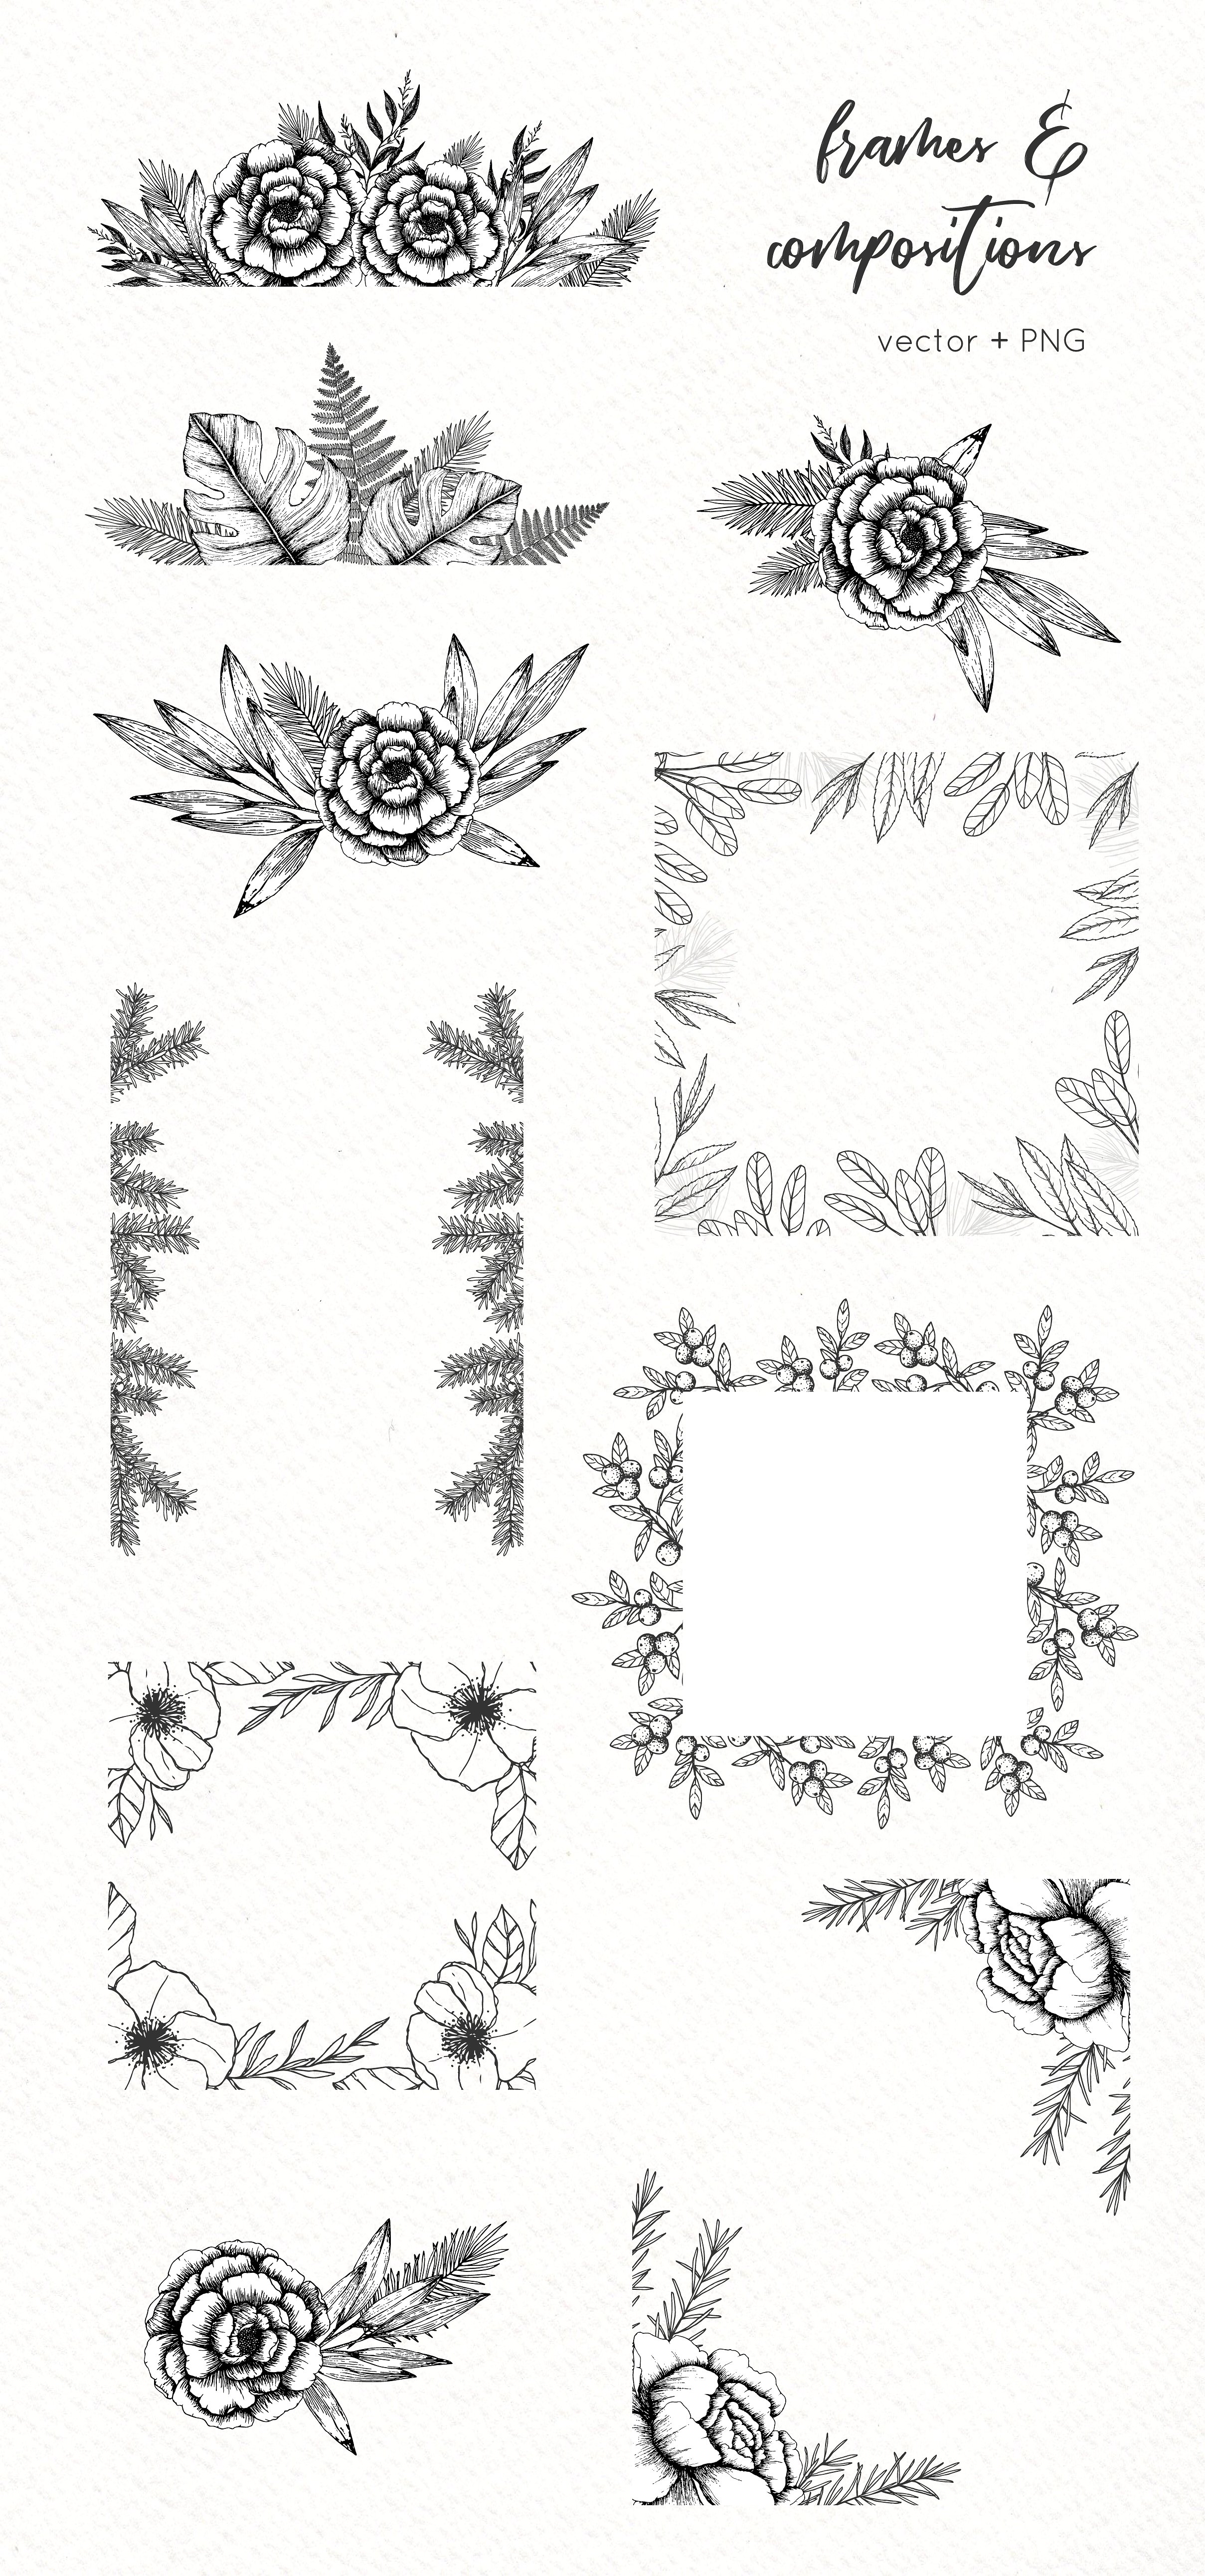 极简主义手绘植物插图包插图(2)